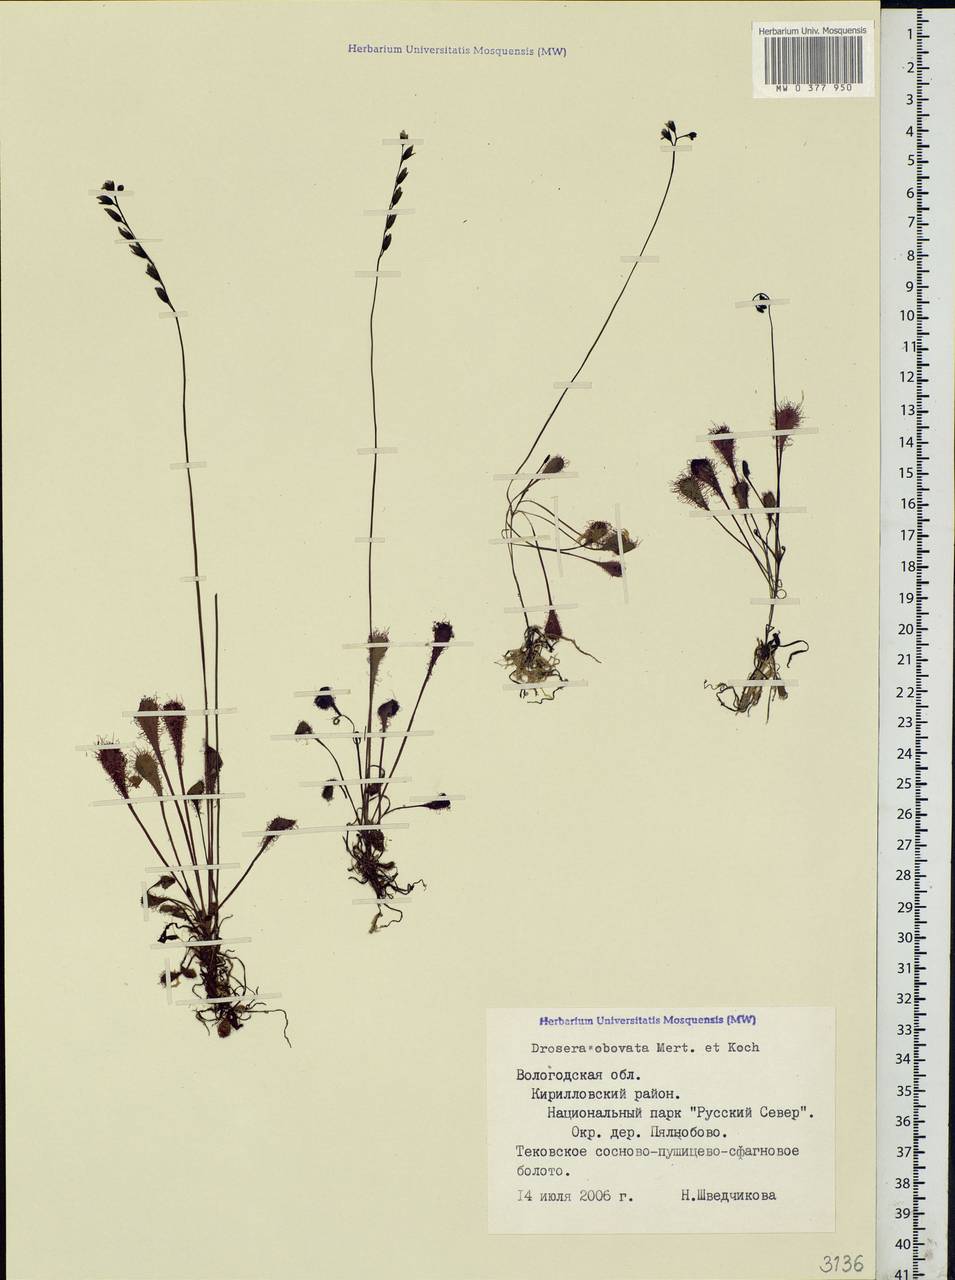 Drosera ×obovata Mert. & W. D. J. Koch, Eastern Europe, Northern region (E1) (Russia)